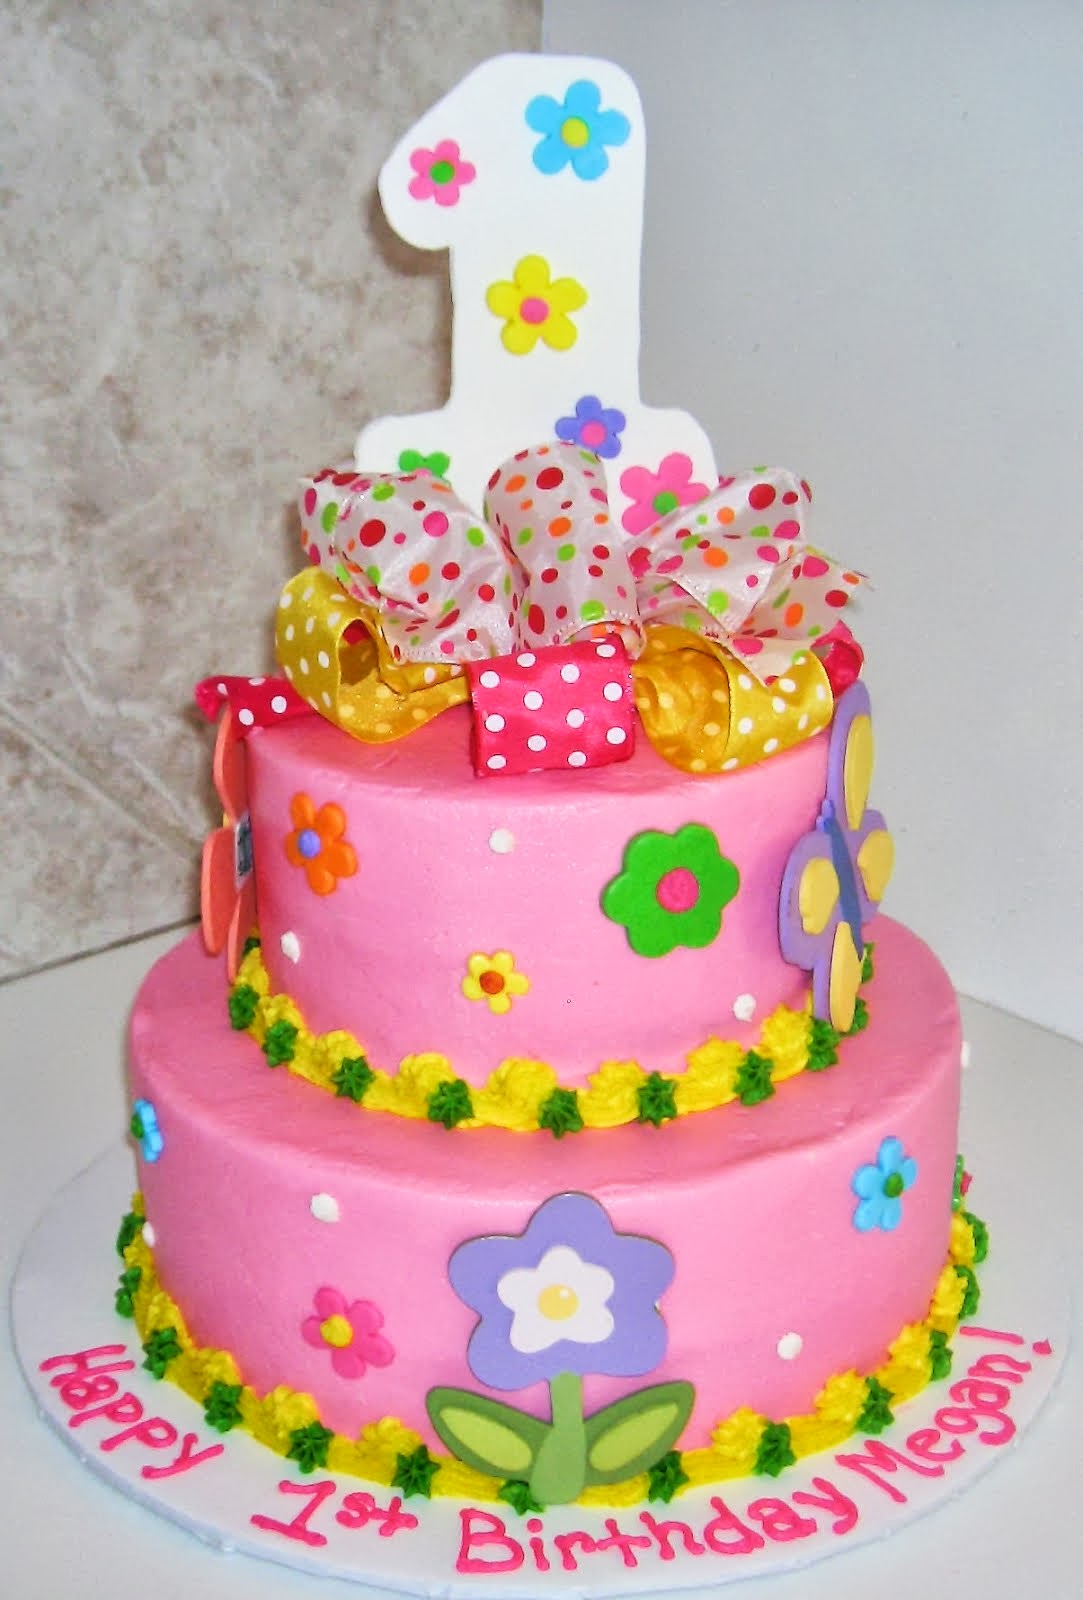 cake birthday: June 2013